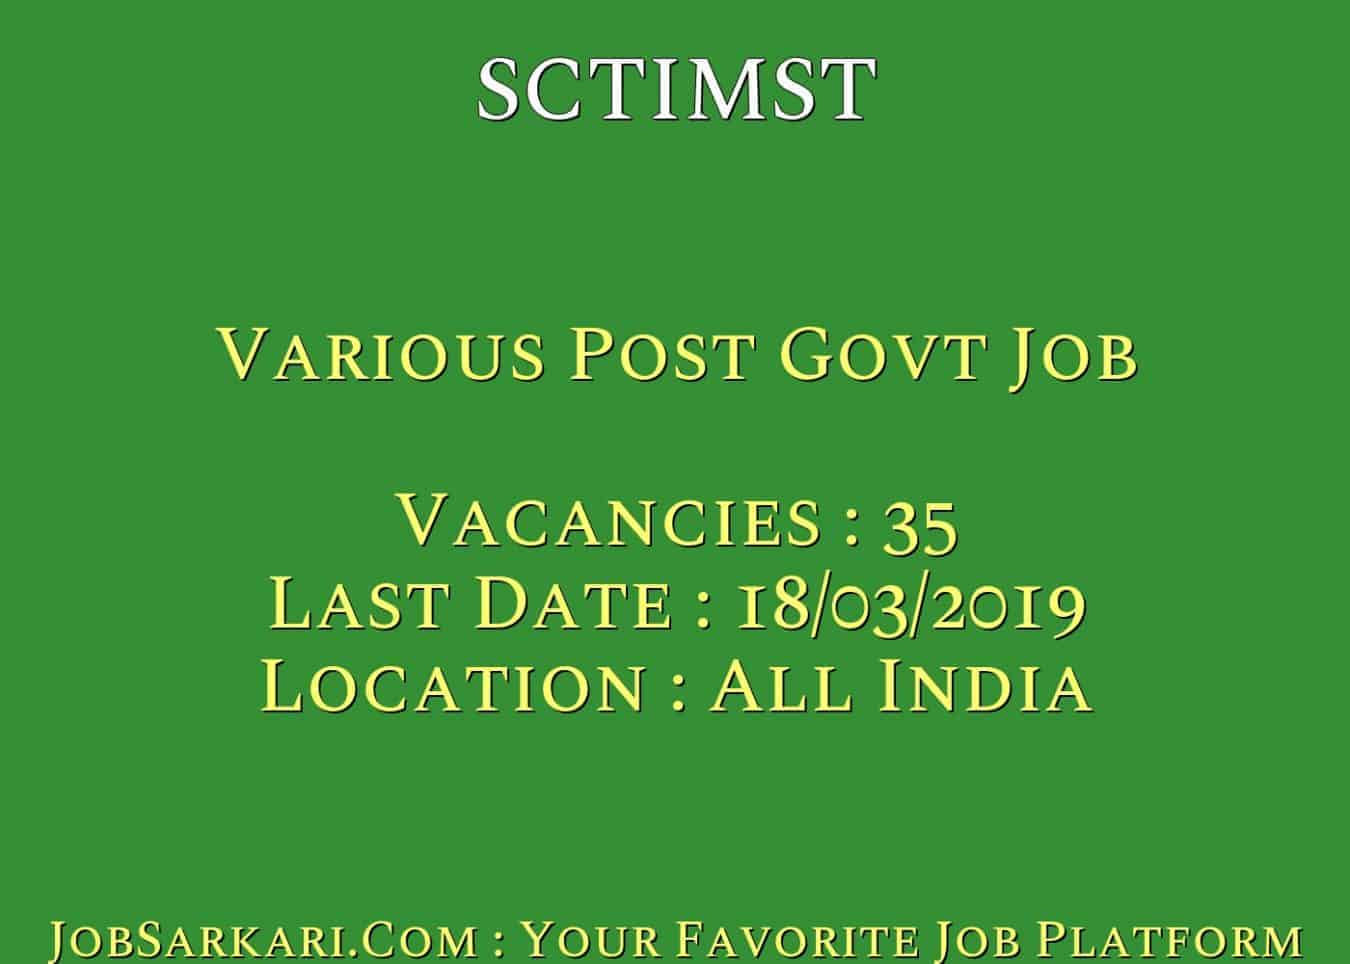 SCTIMST Recruitment 2019 For Various Post Govt Job